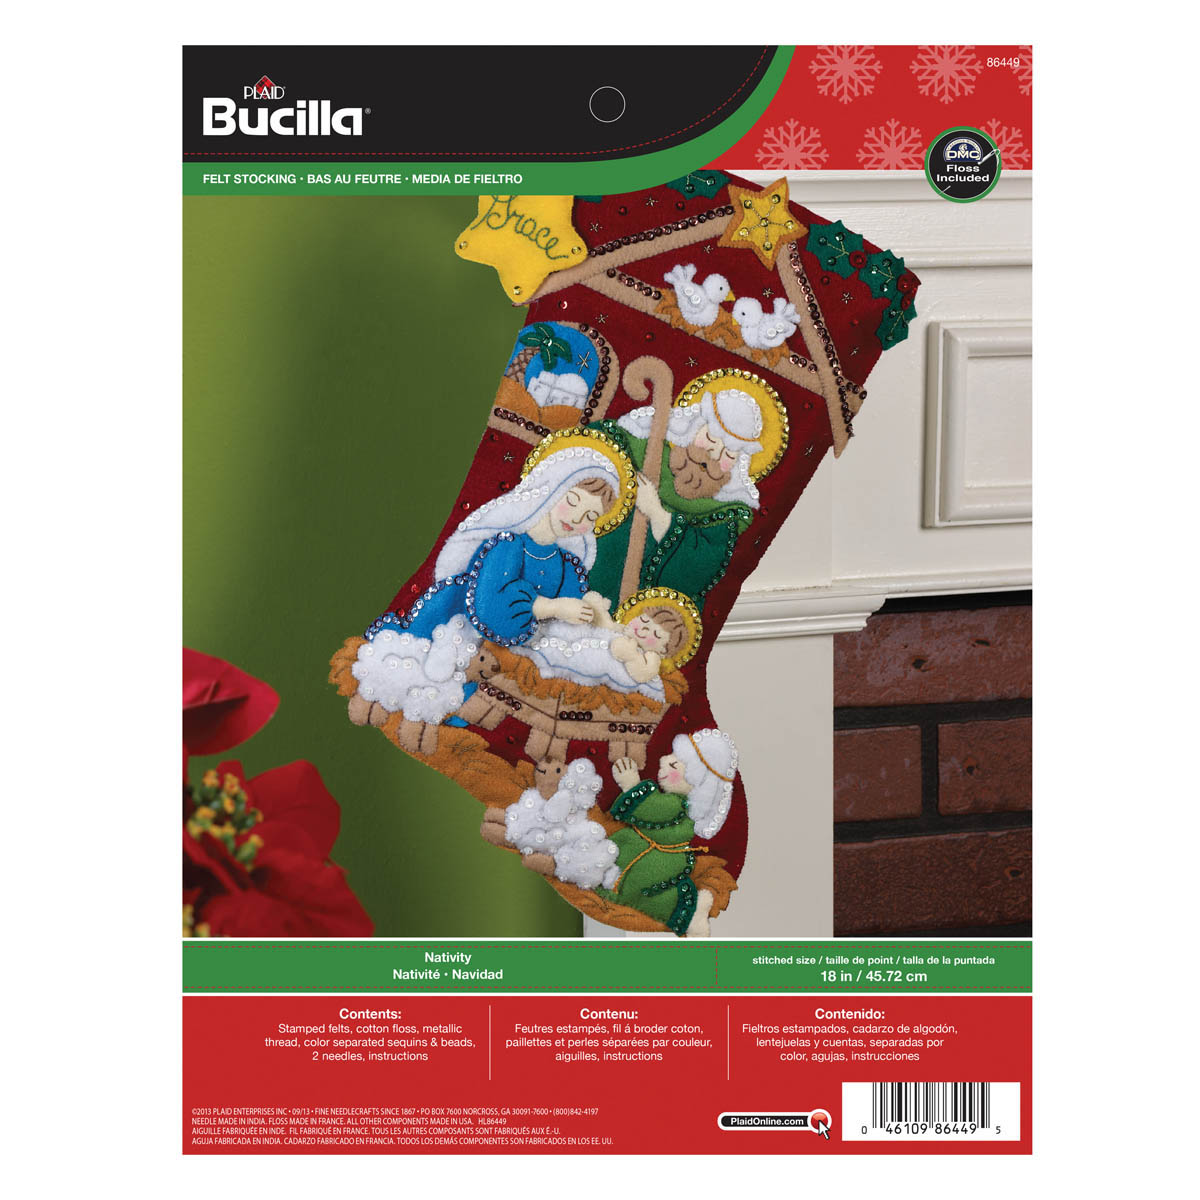 Bucilla ® Seasonal - Felt - Stocking Kits - Nativity - 86449